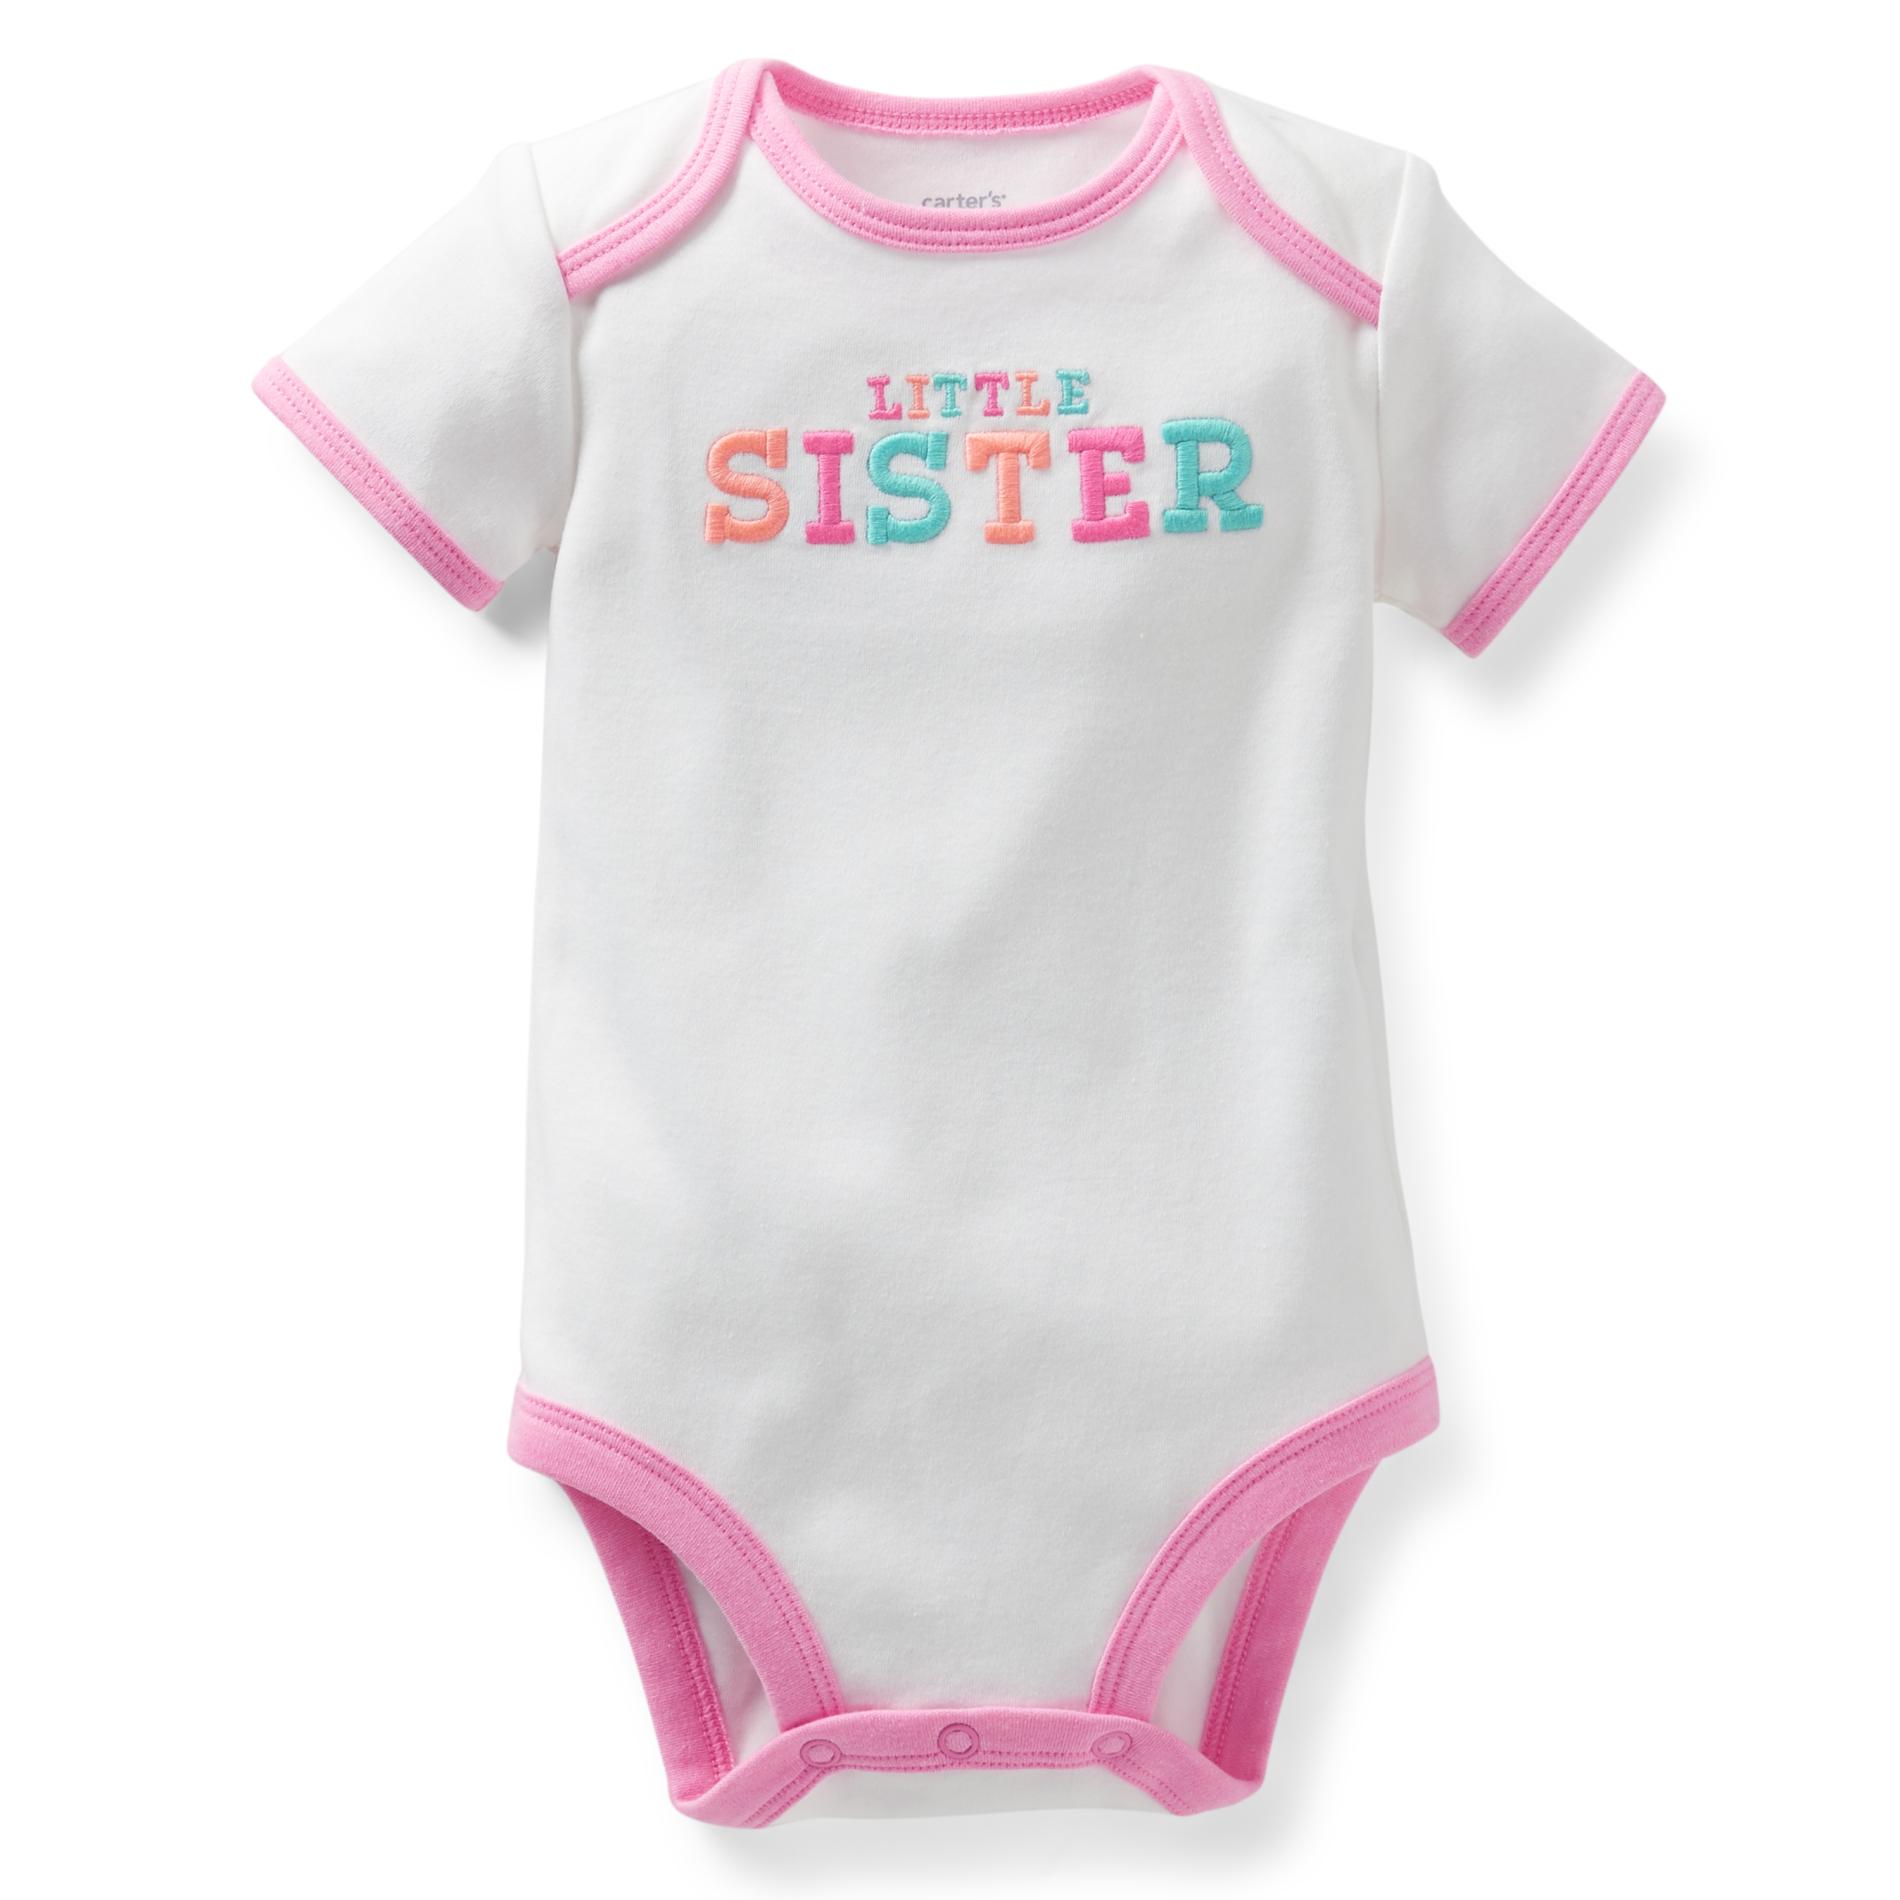 Carter's Newborn & Infant Girl's Bodysuit - Little Sister